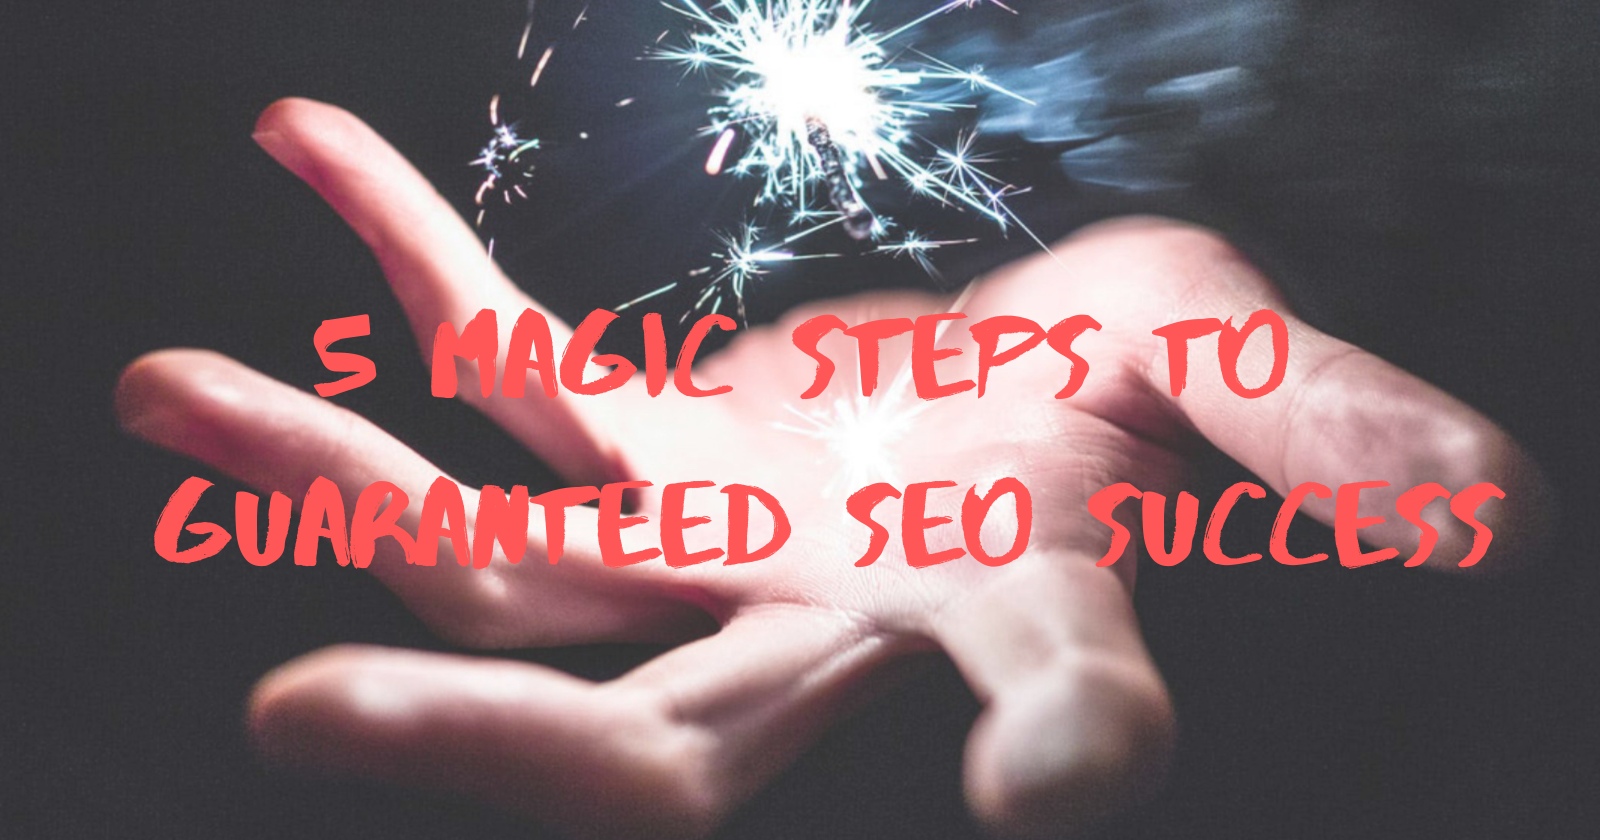 5 Magic Steps to Guaranteed SEO Success